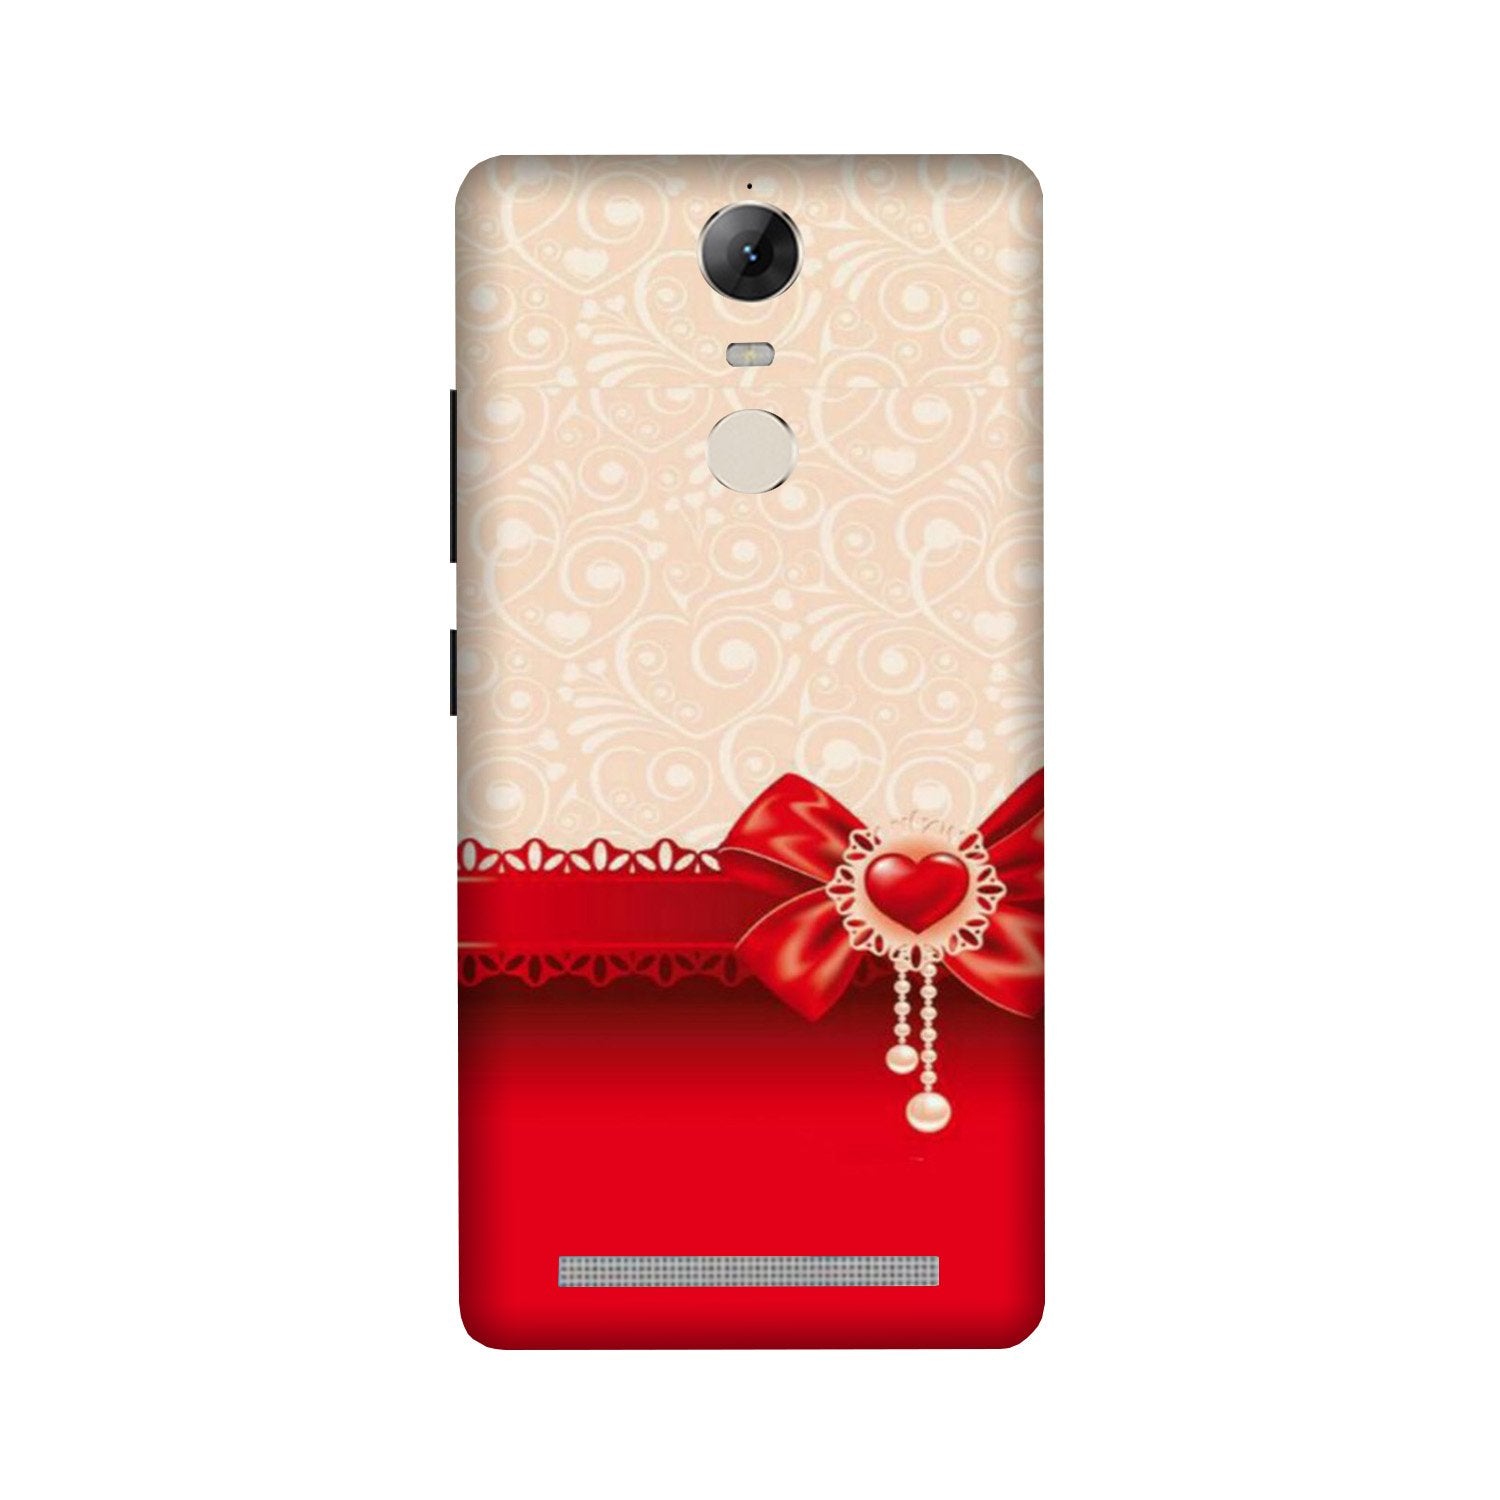 Gift Wrap3 Case for Lenovo Vibe K5 Note